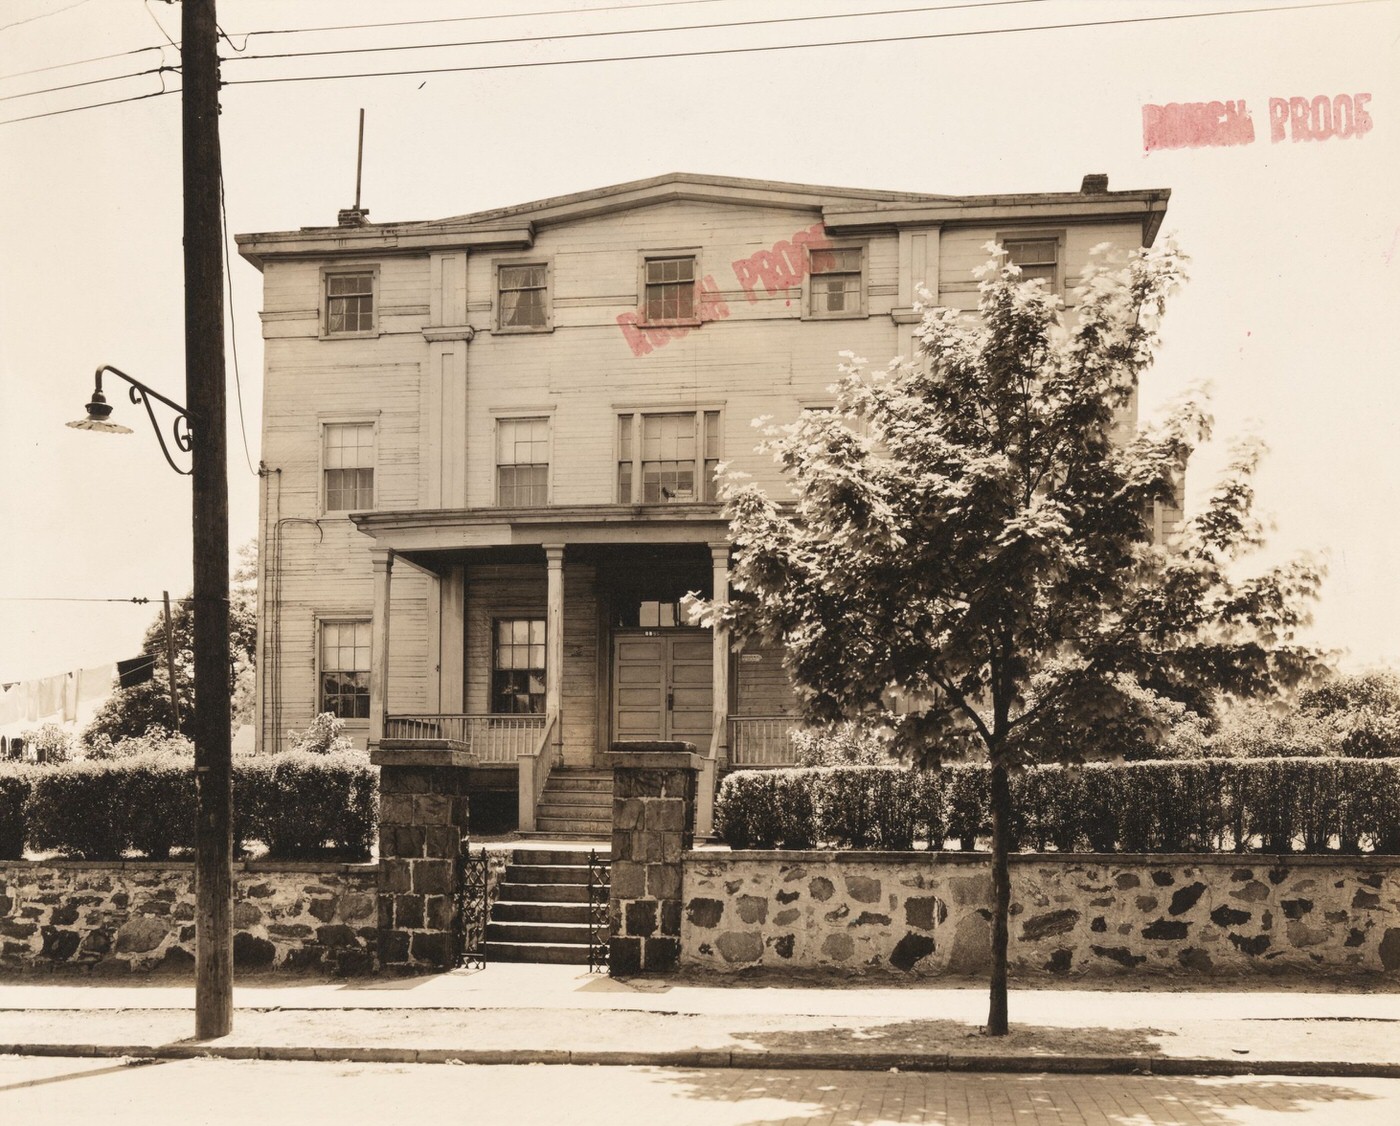 1422 27Th Avenue, Astoria, Queens, 1920S.